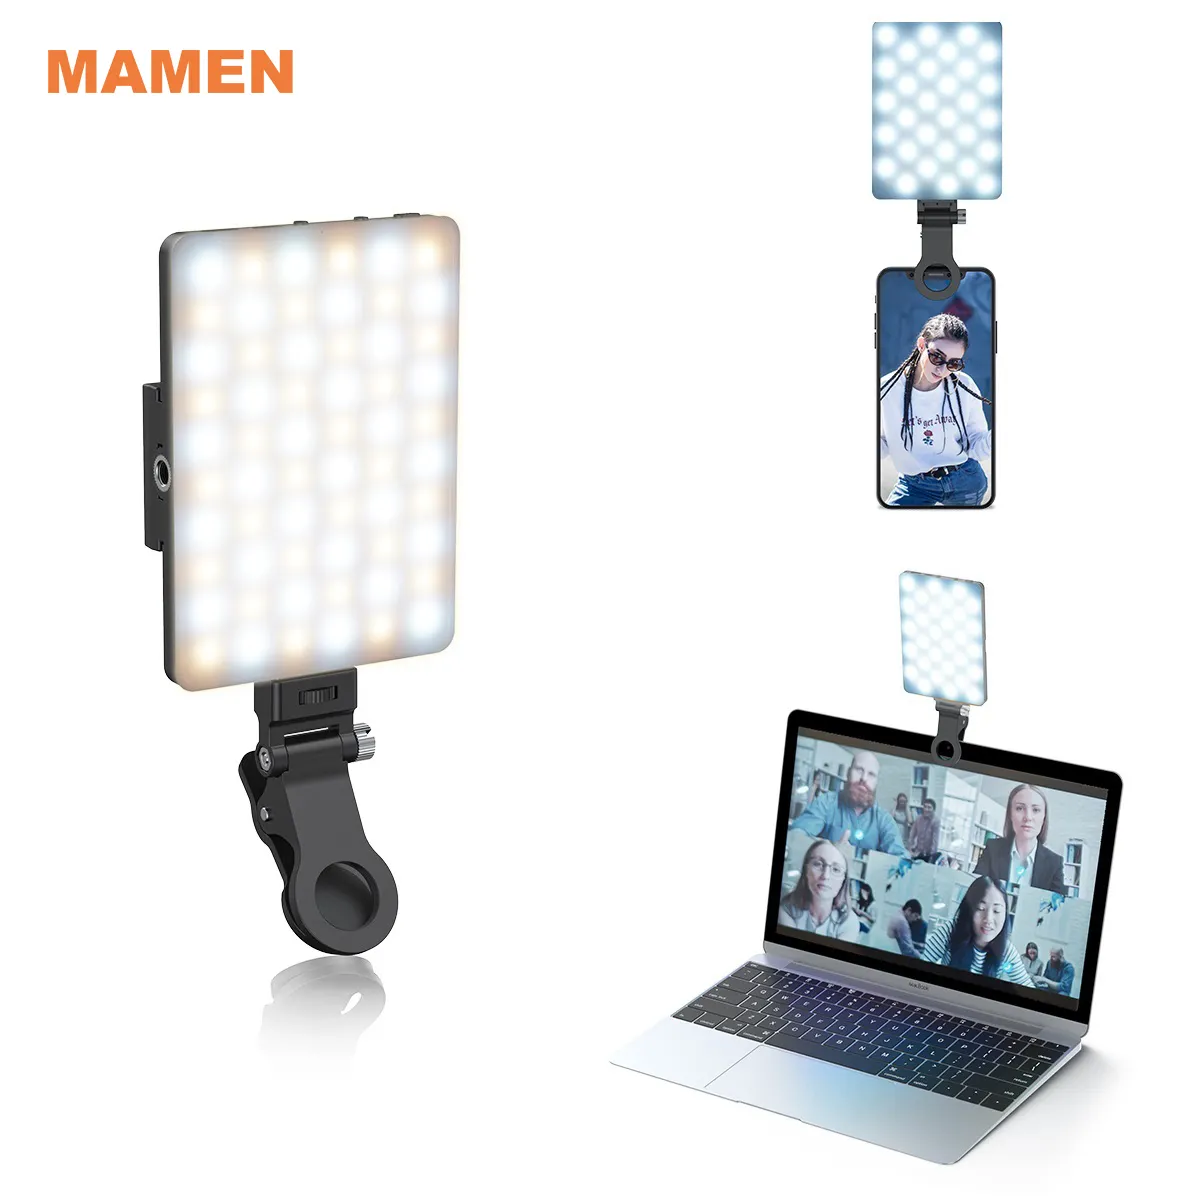 MAMEN-Luz LED de relleno para teléfono inteligente, de 5W miniluz, para selfi, ordenador, teléfono móvil